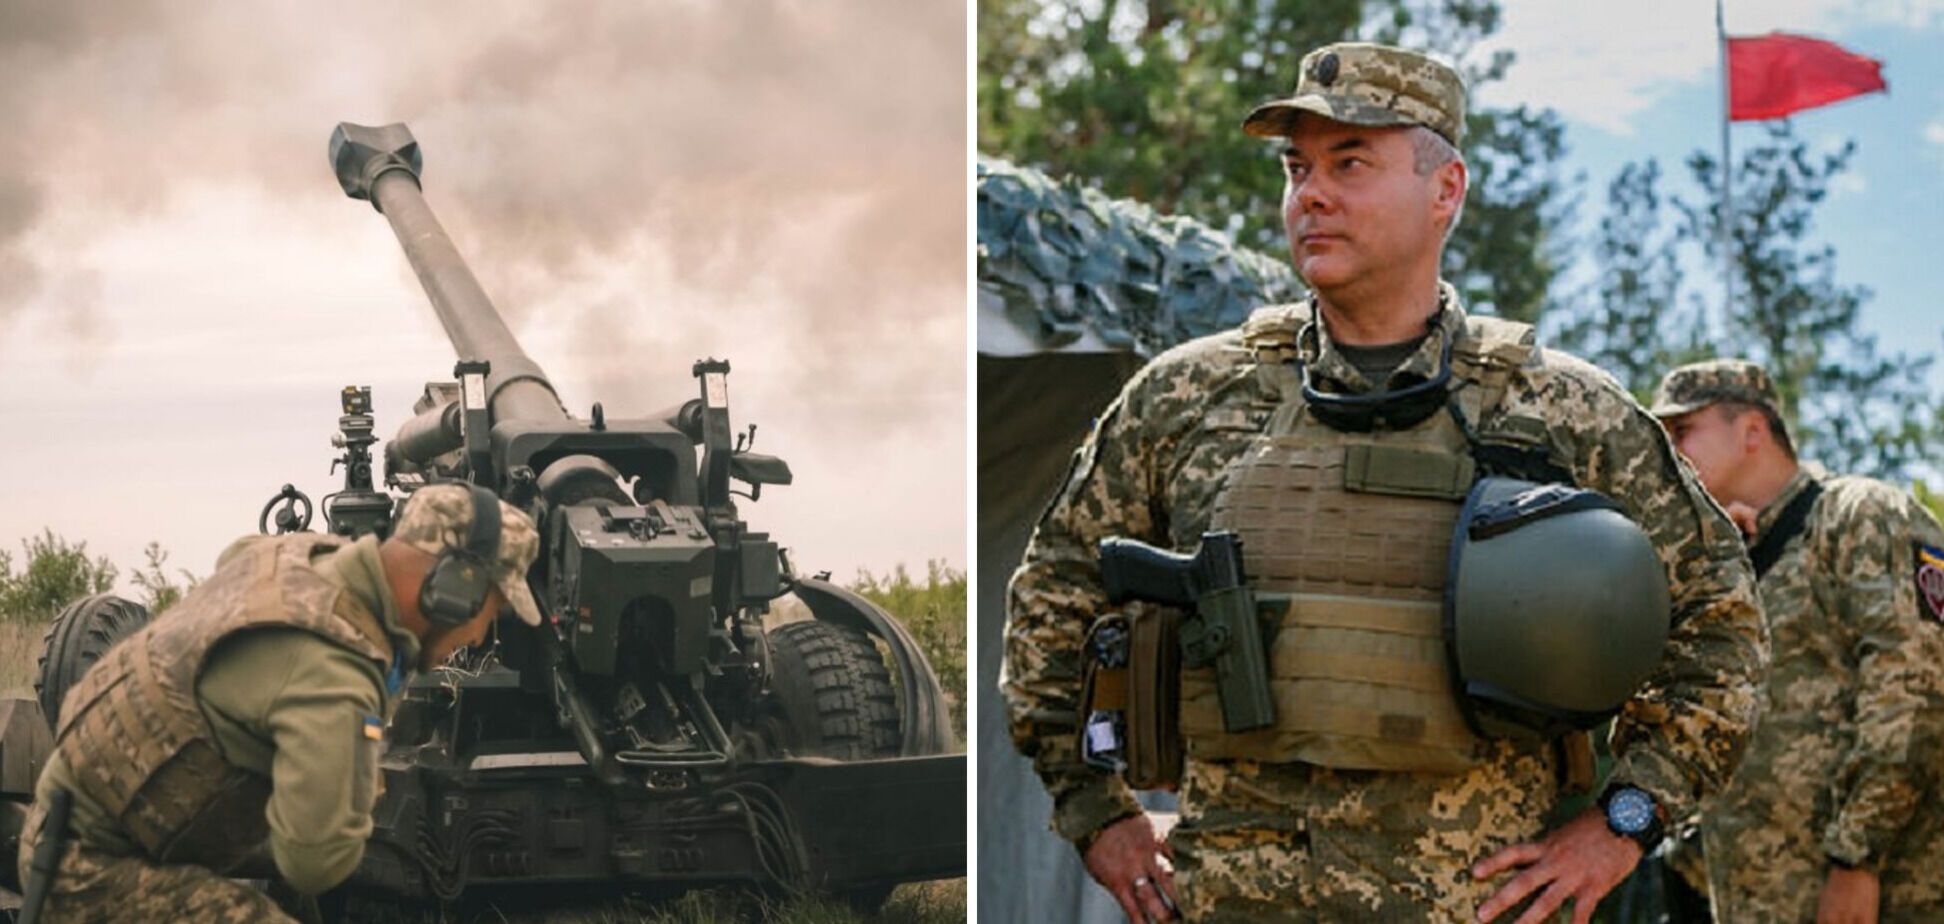 Війська РФ нарощують сили та стягують техніку, щоб спробувати оточити ЗСУ на Донбасі, – Наєв